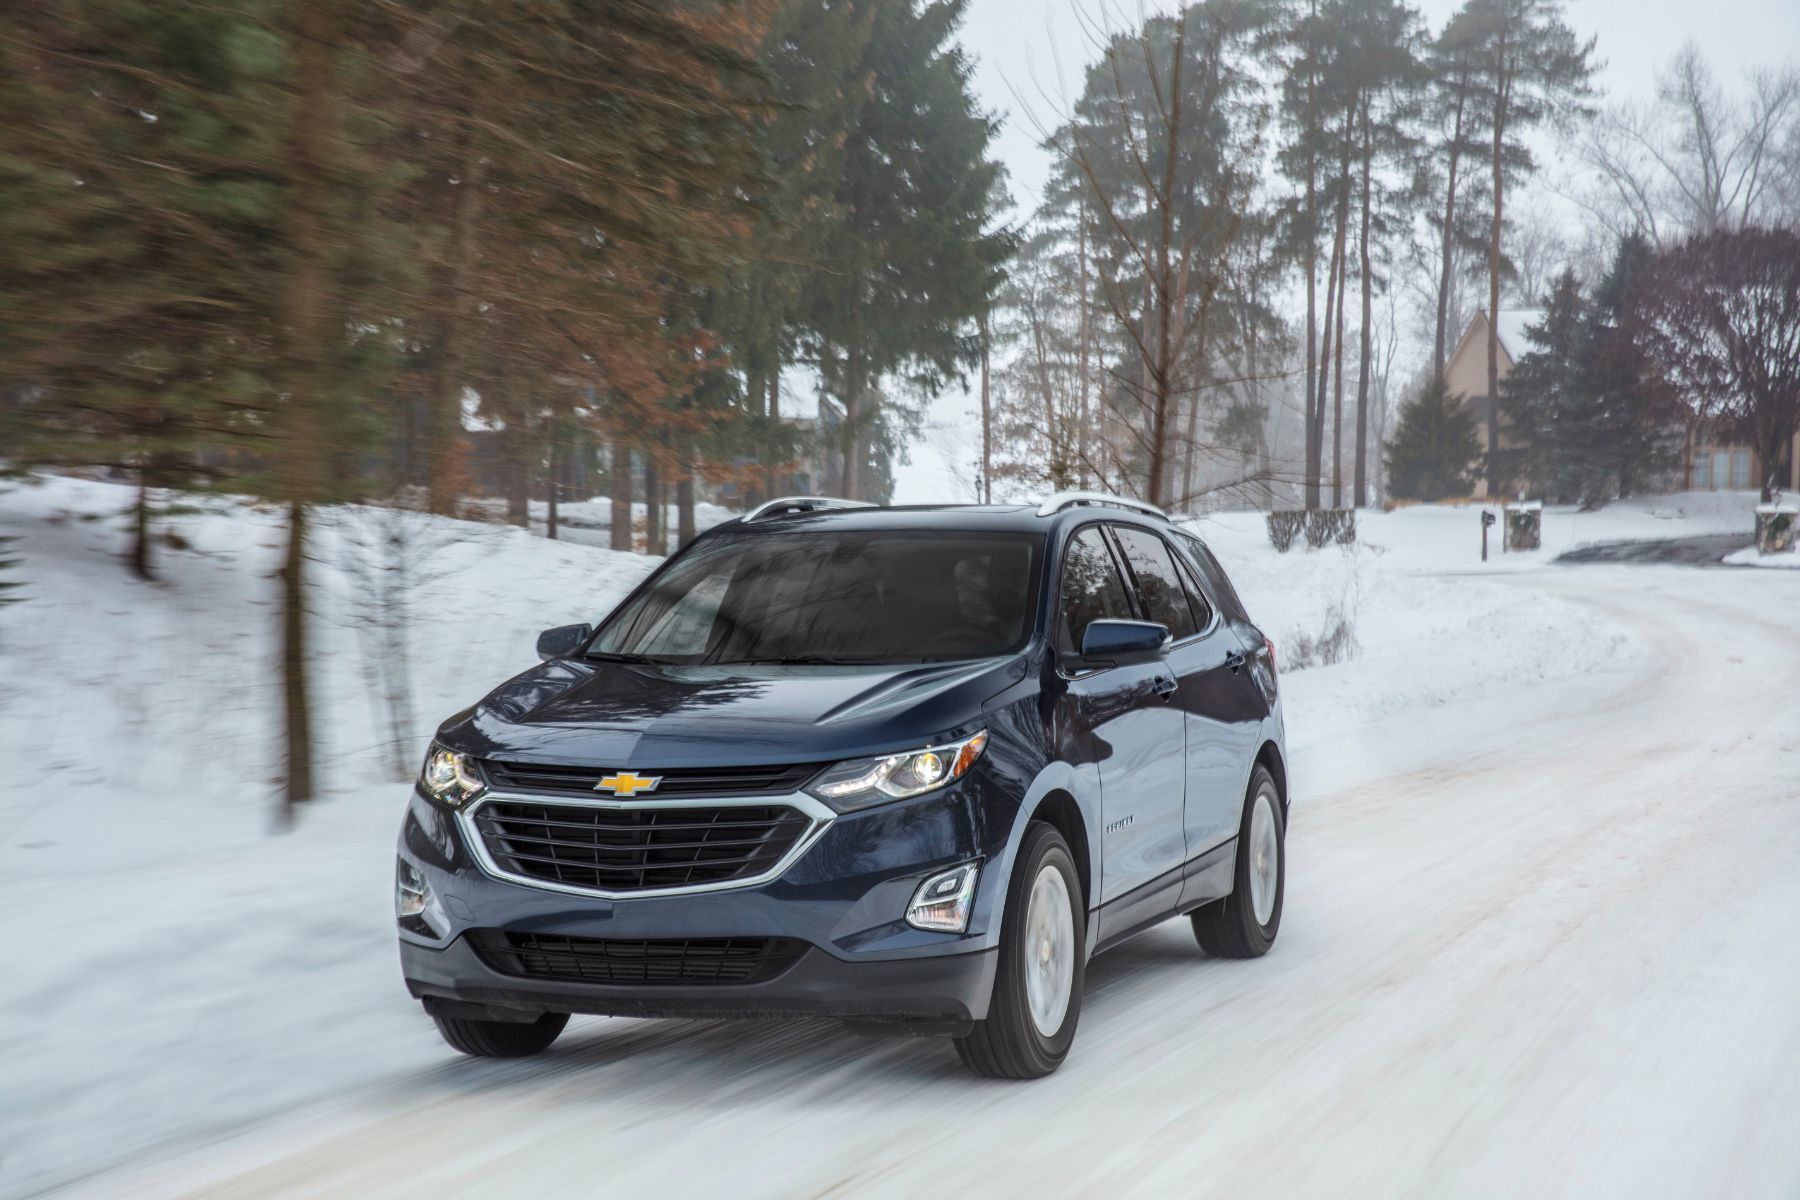 Comment bien préparer ton véhicule GM à l'arrivée de l'hiver?